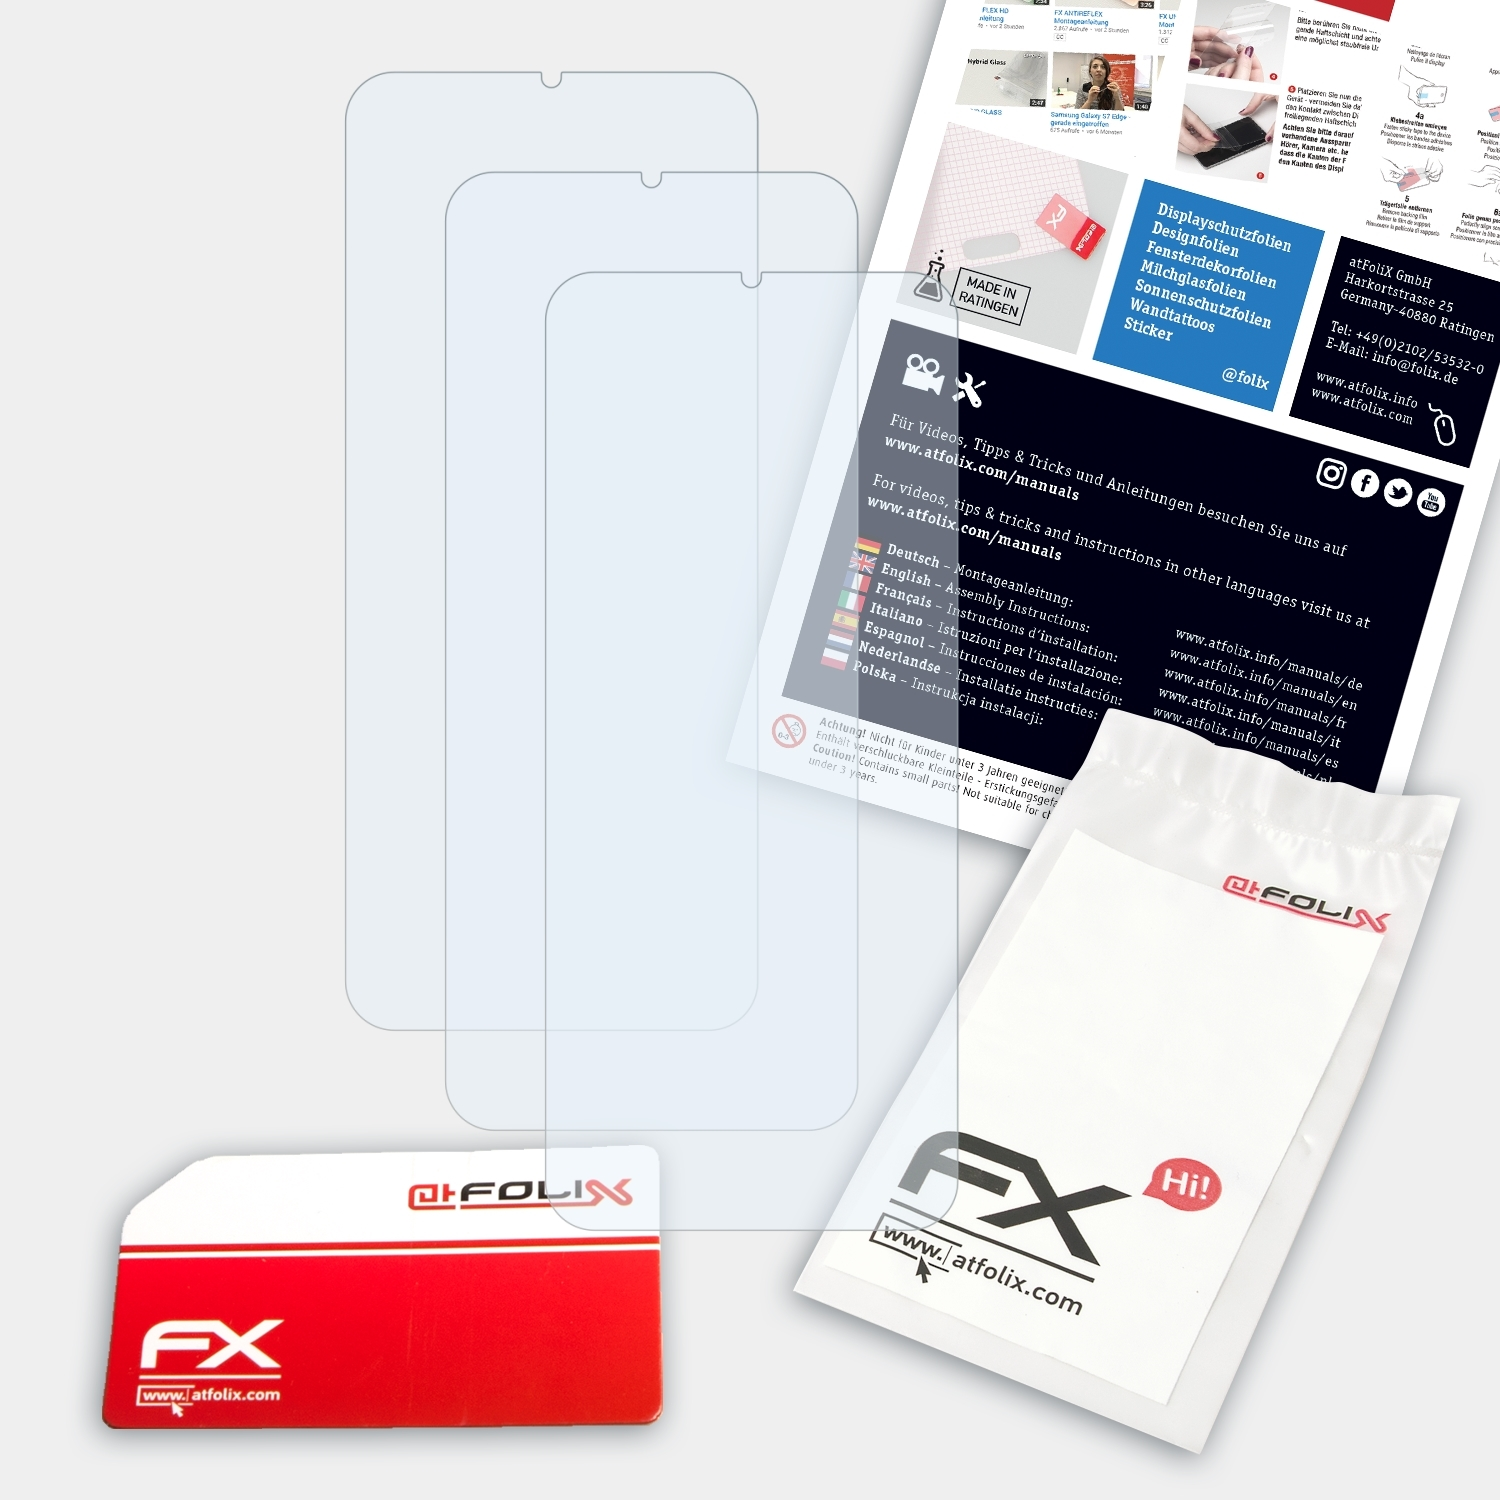 ATFOLIX Displayschutz(für 3X FX-Clear 3x (2020)) Alcatel